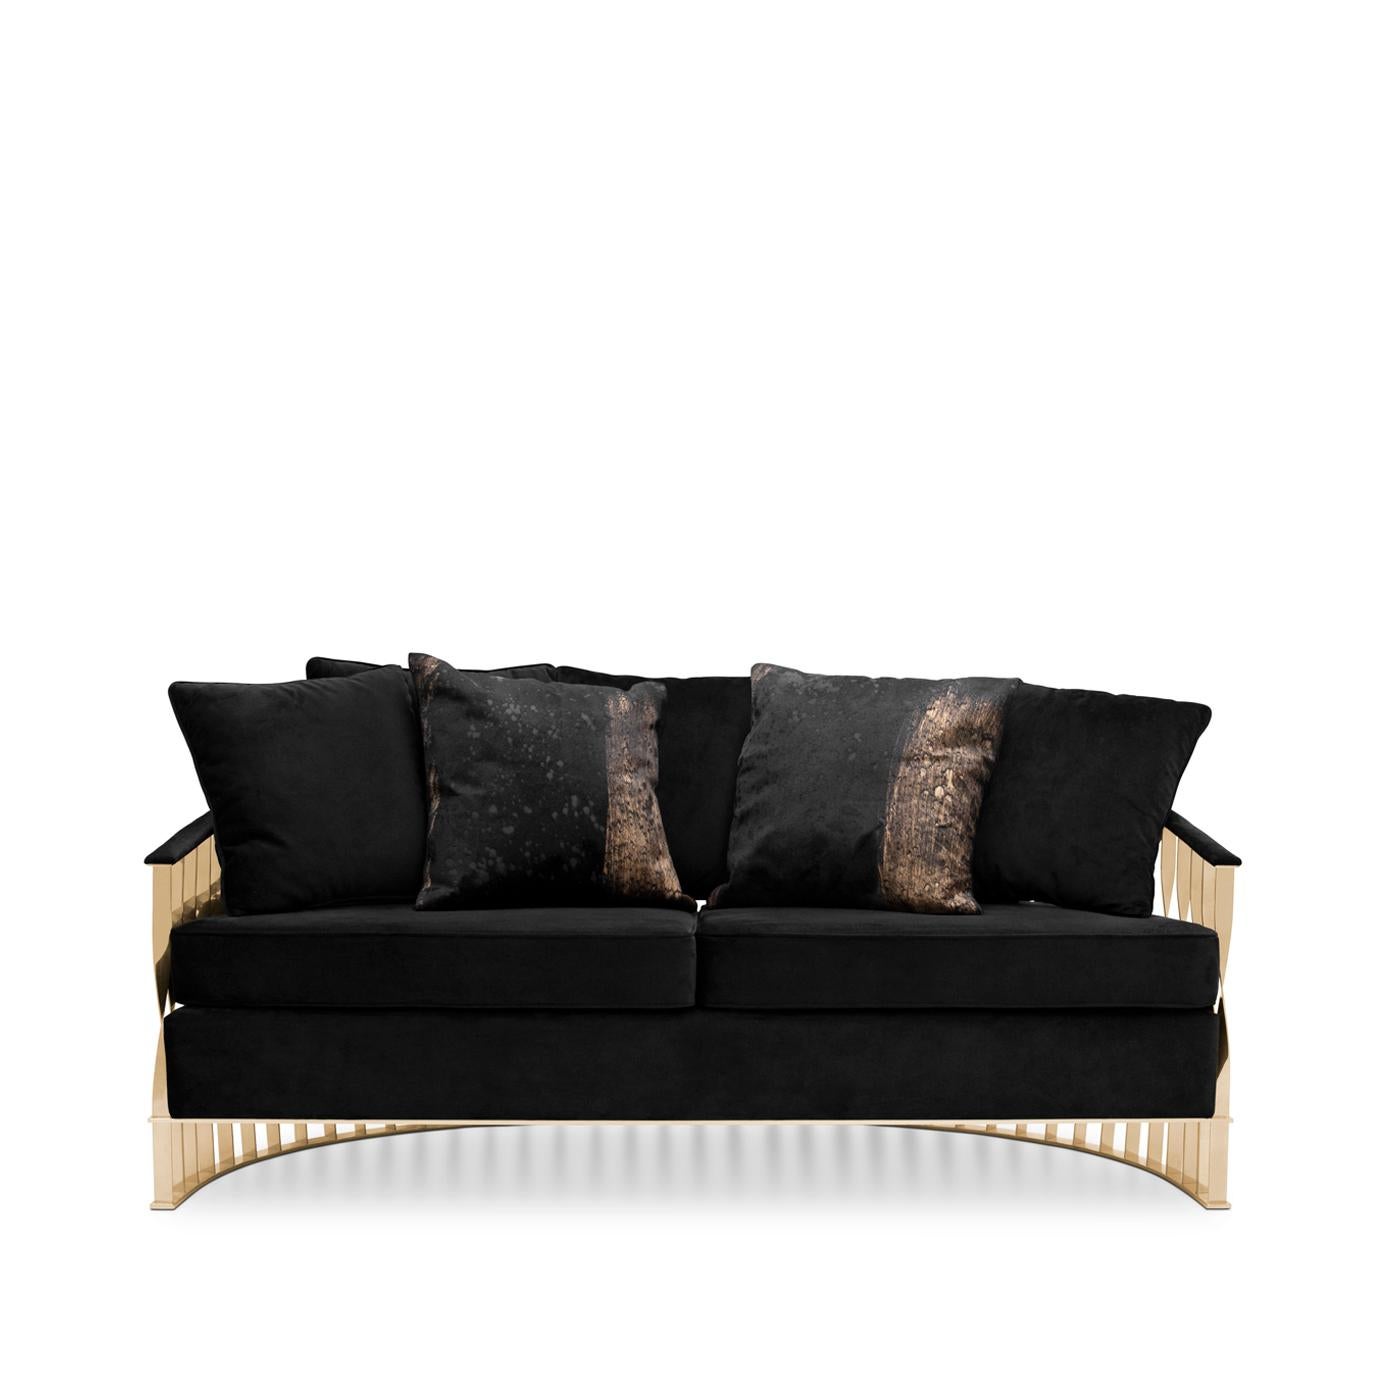 Dieses fließende und ungewöhnliche Sofa geht über Design und Schmuck hinaus. Das Sofa Mandy, das aus einem Manschettenarmband entstanden ist, verschönert mit seiner weichen Polsterung und einem Gestell aus gedrehtem, hochglänzendem Metall jede